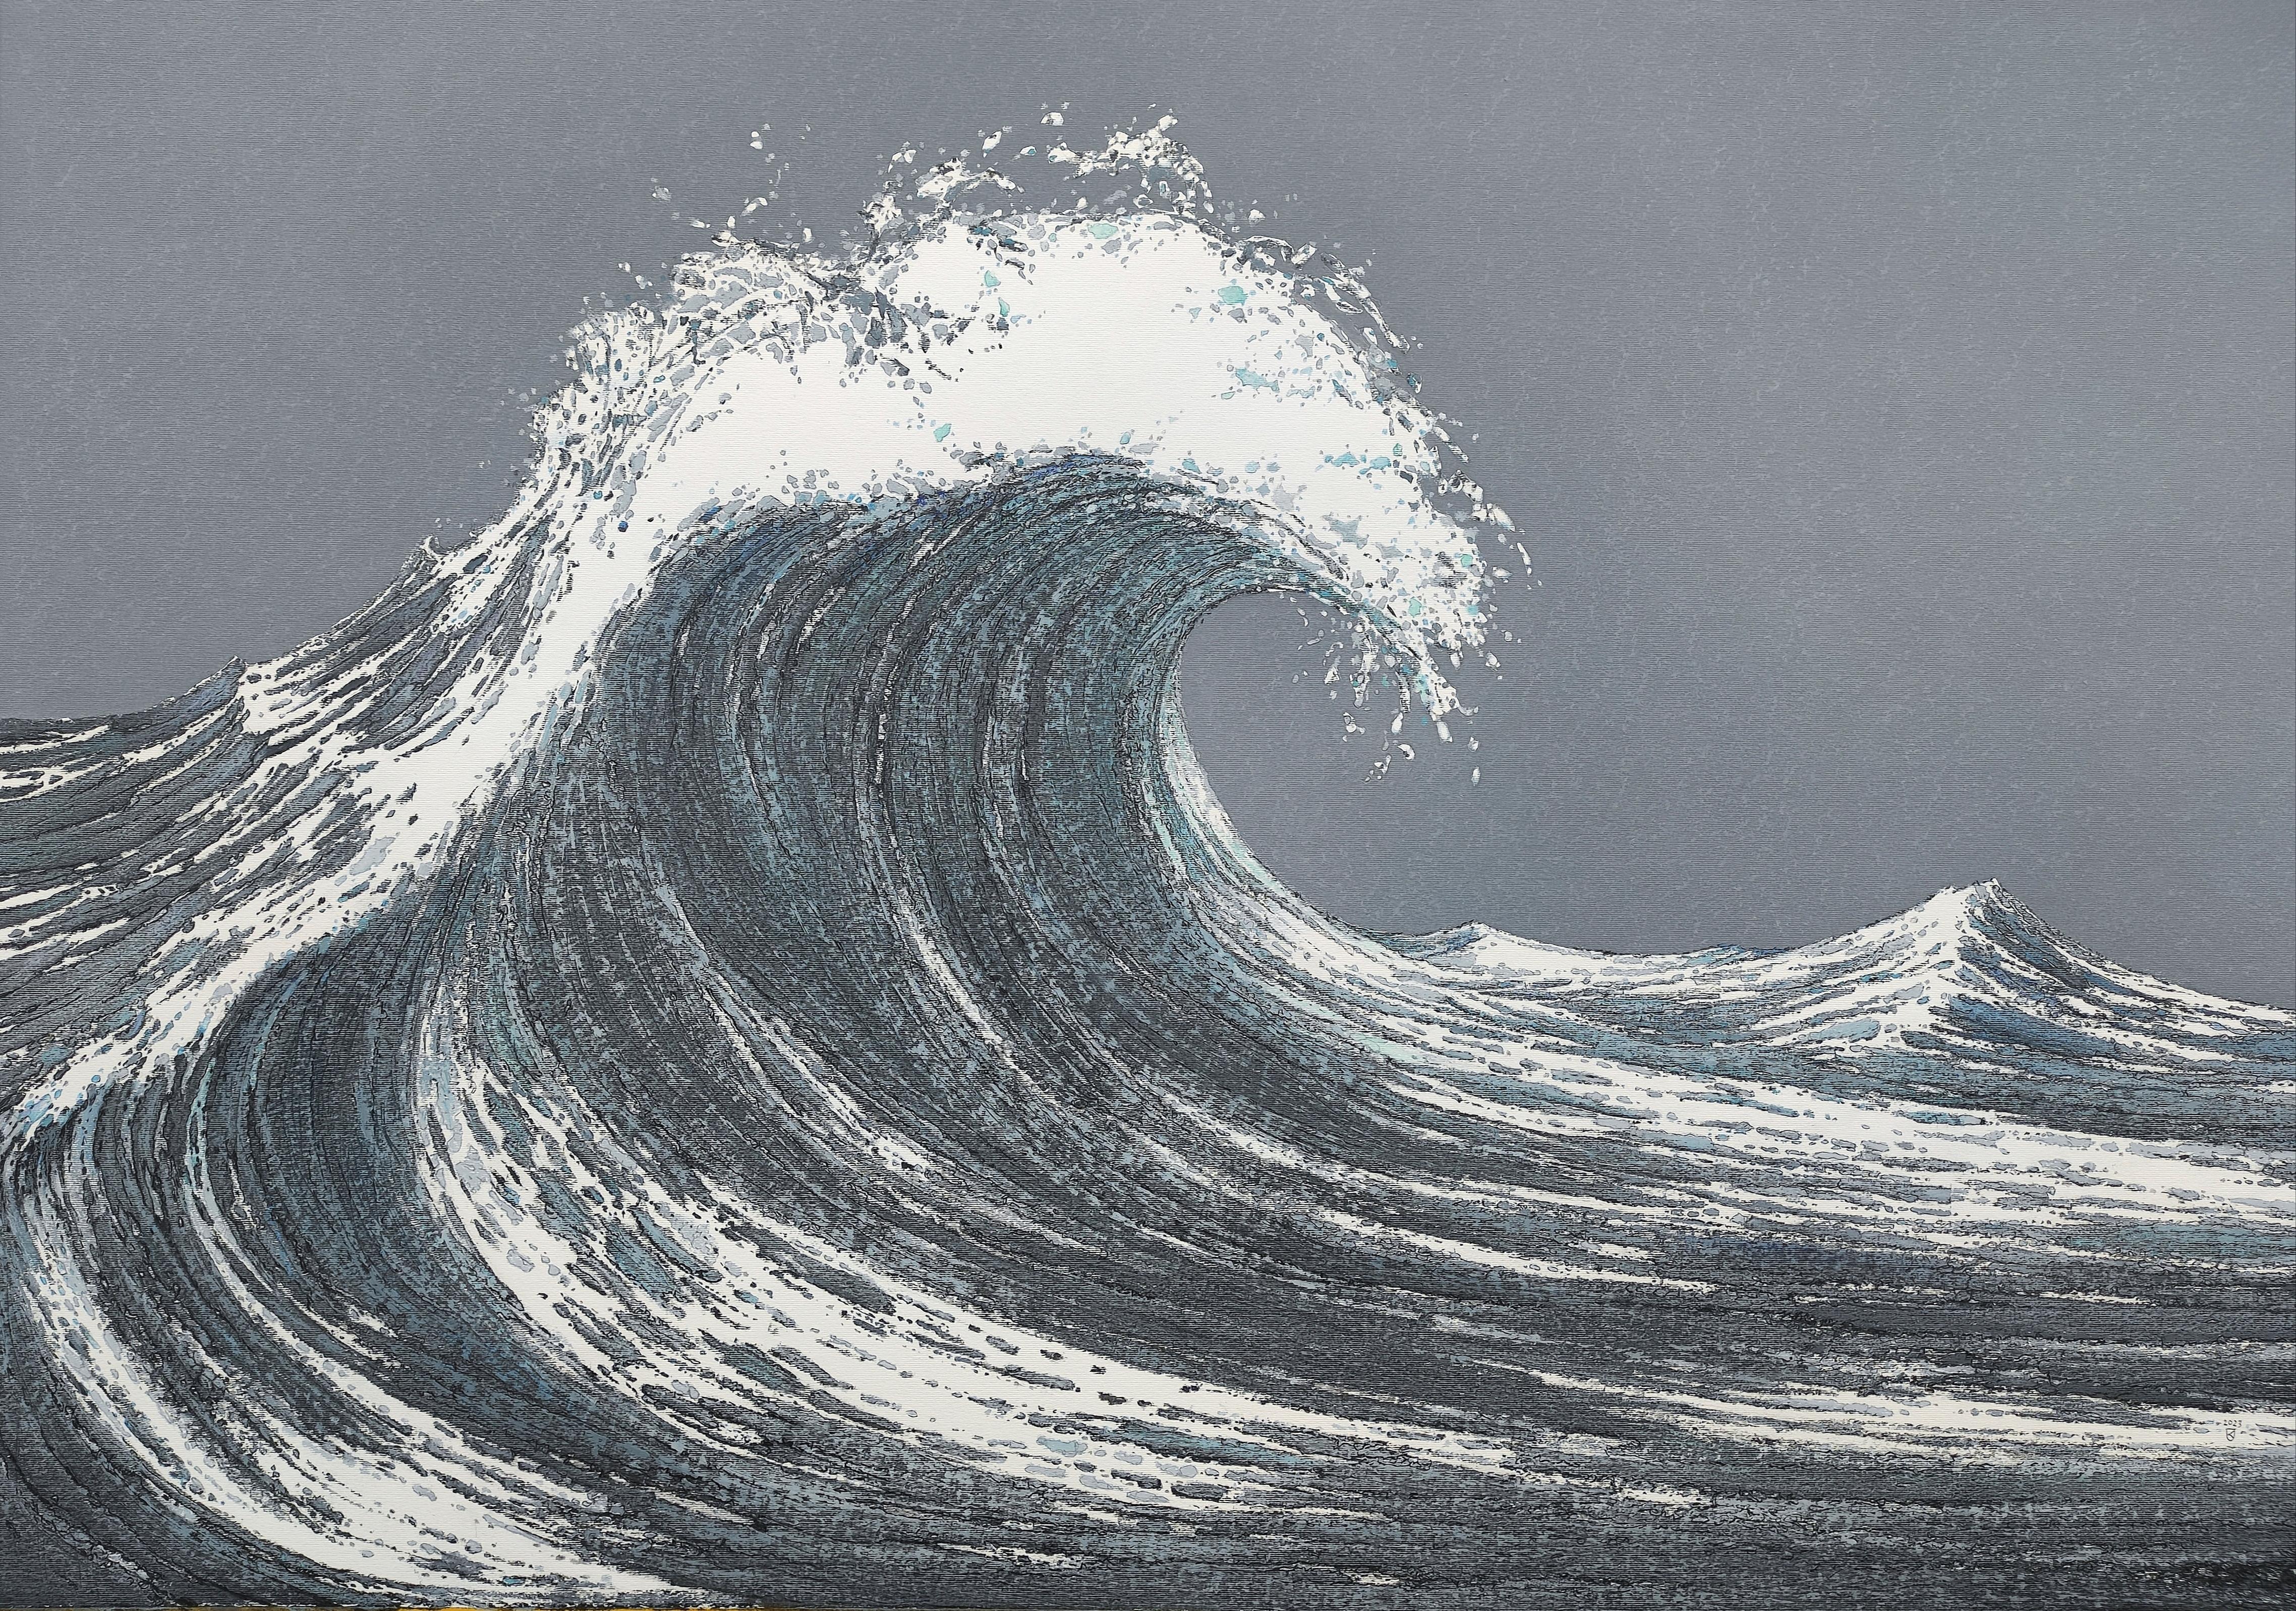 Janusz Kokot Landscape Art - The  Wave - Contemporary Atmospheric Sea Landscape Oil Pastel Painting